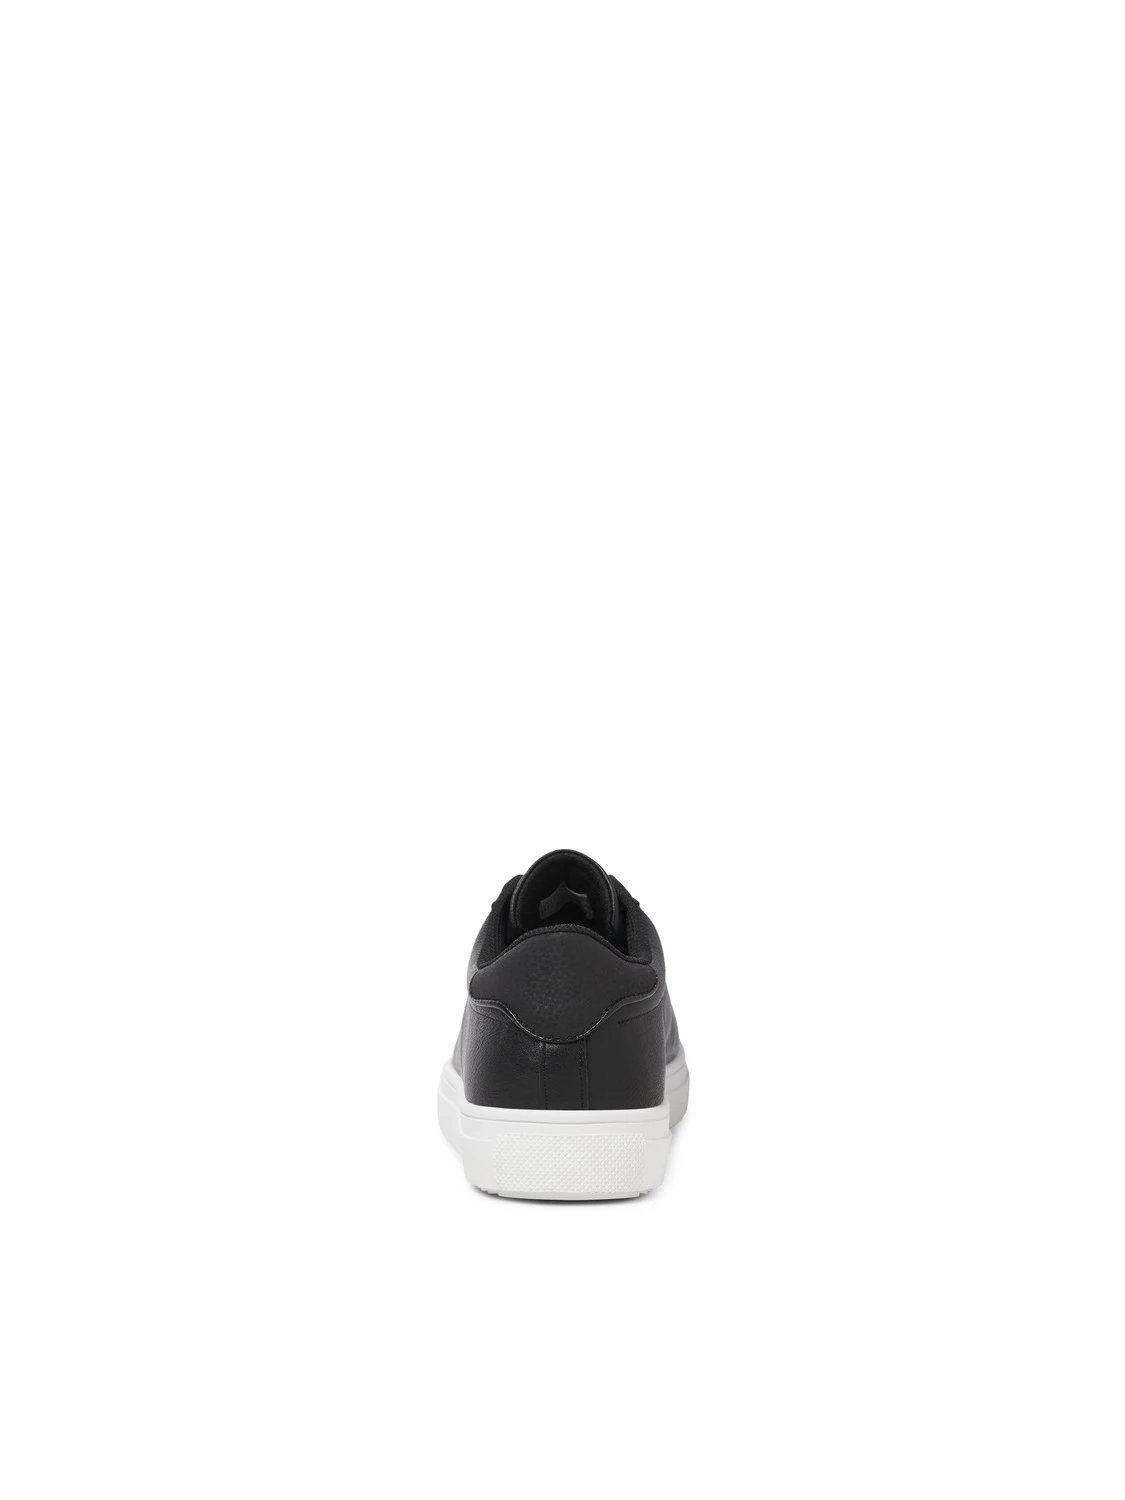 jackjones-polyestersneakers-sort-1-kopier.jpg